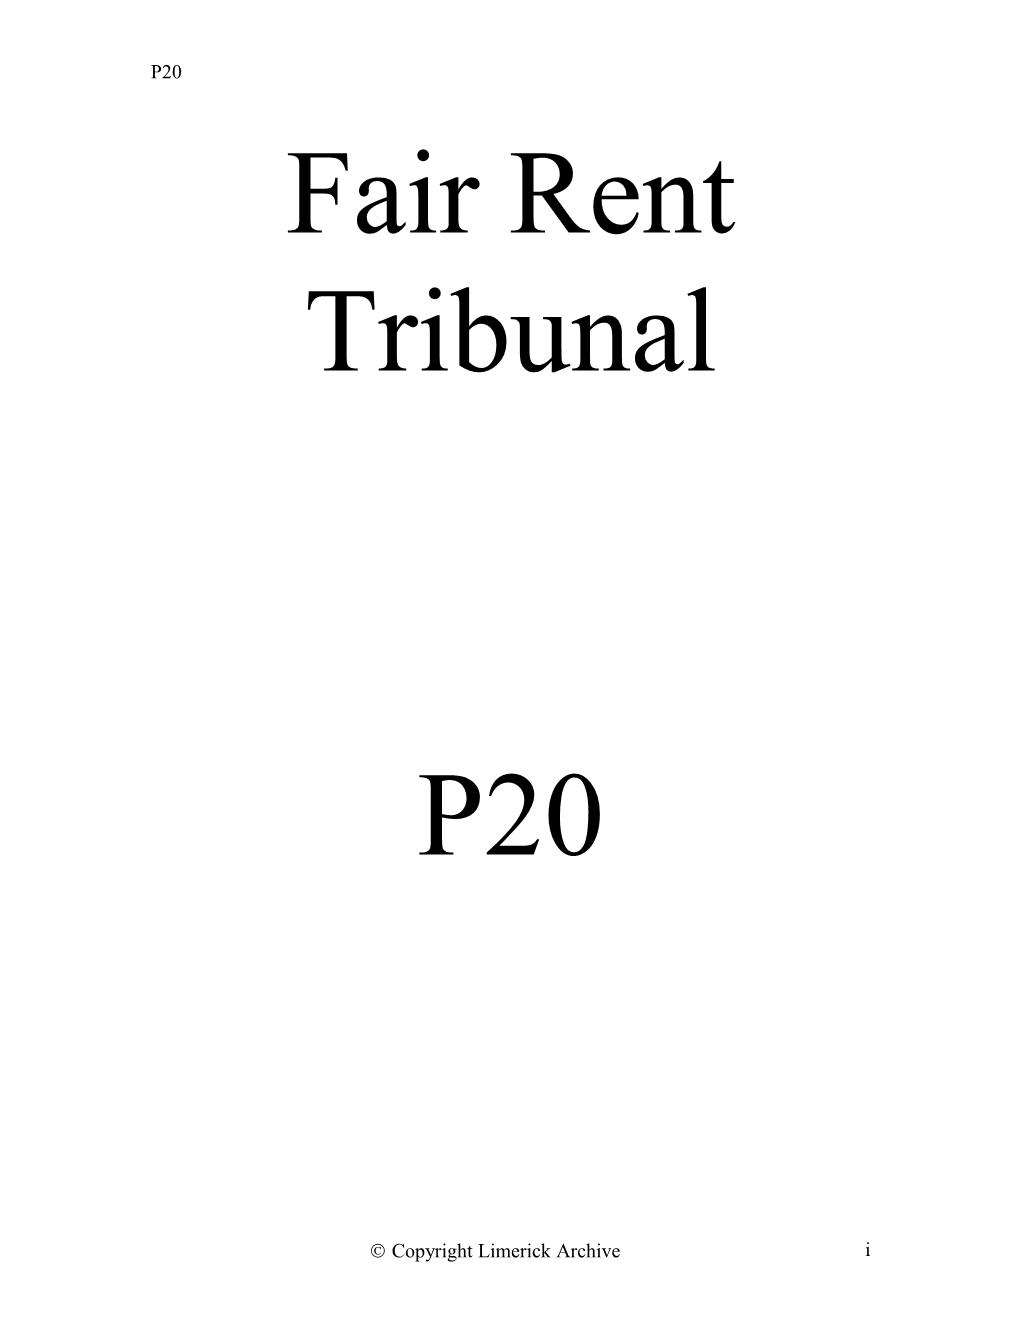 P20 Fair Rent Tribunal